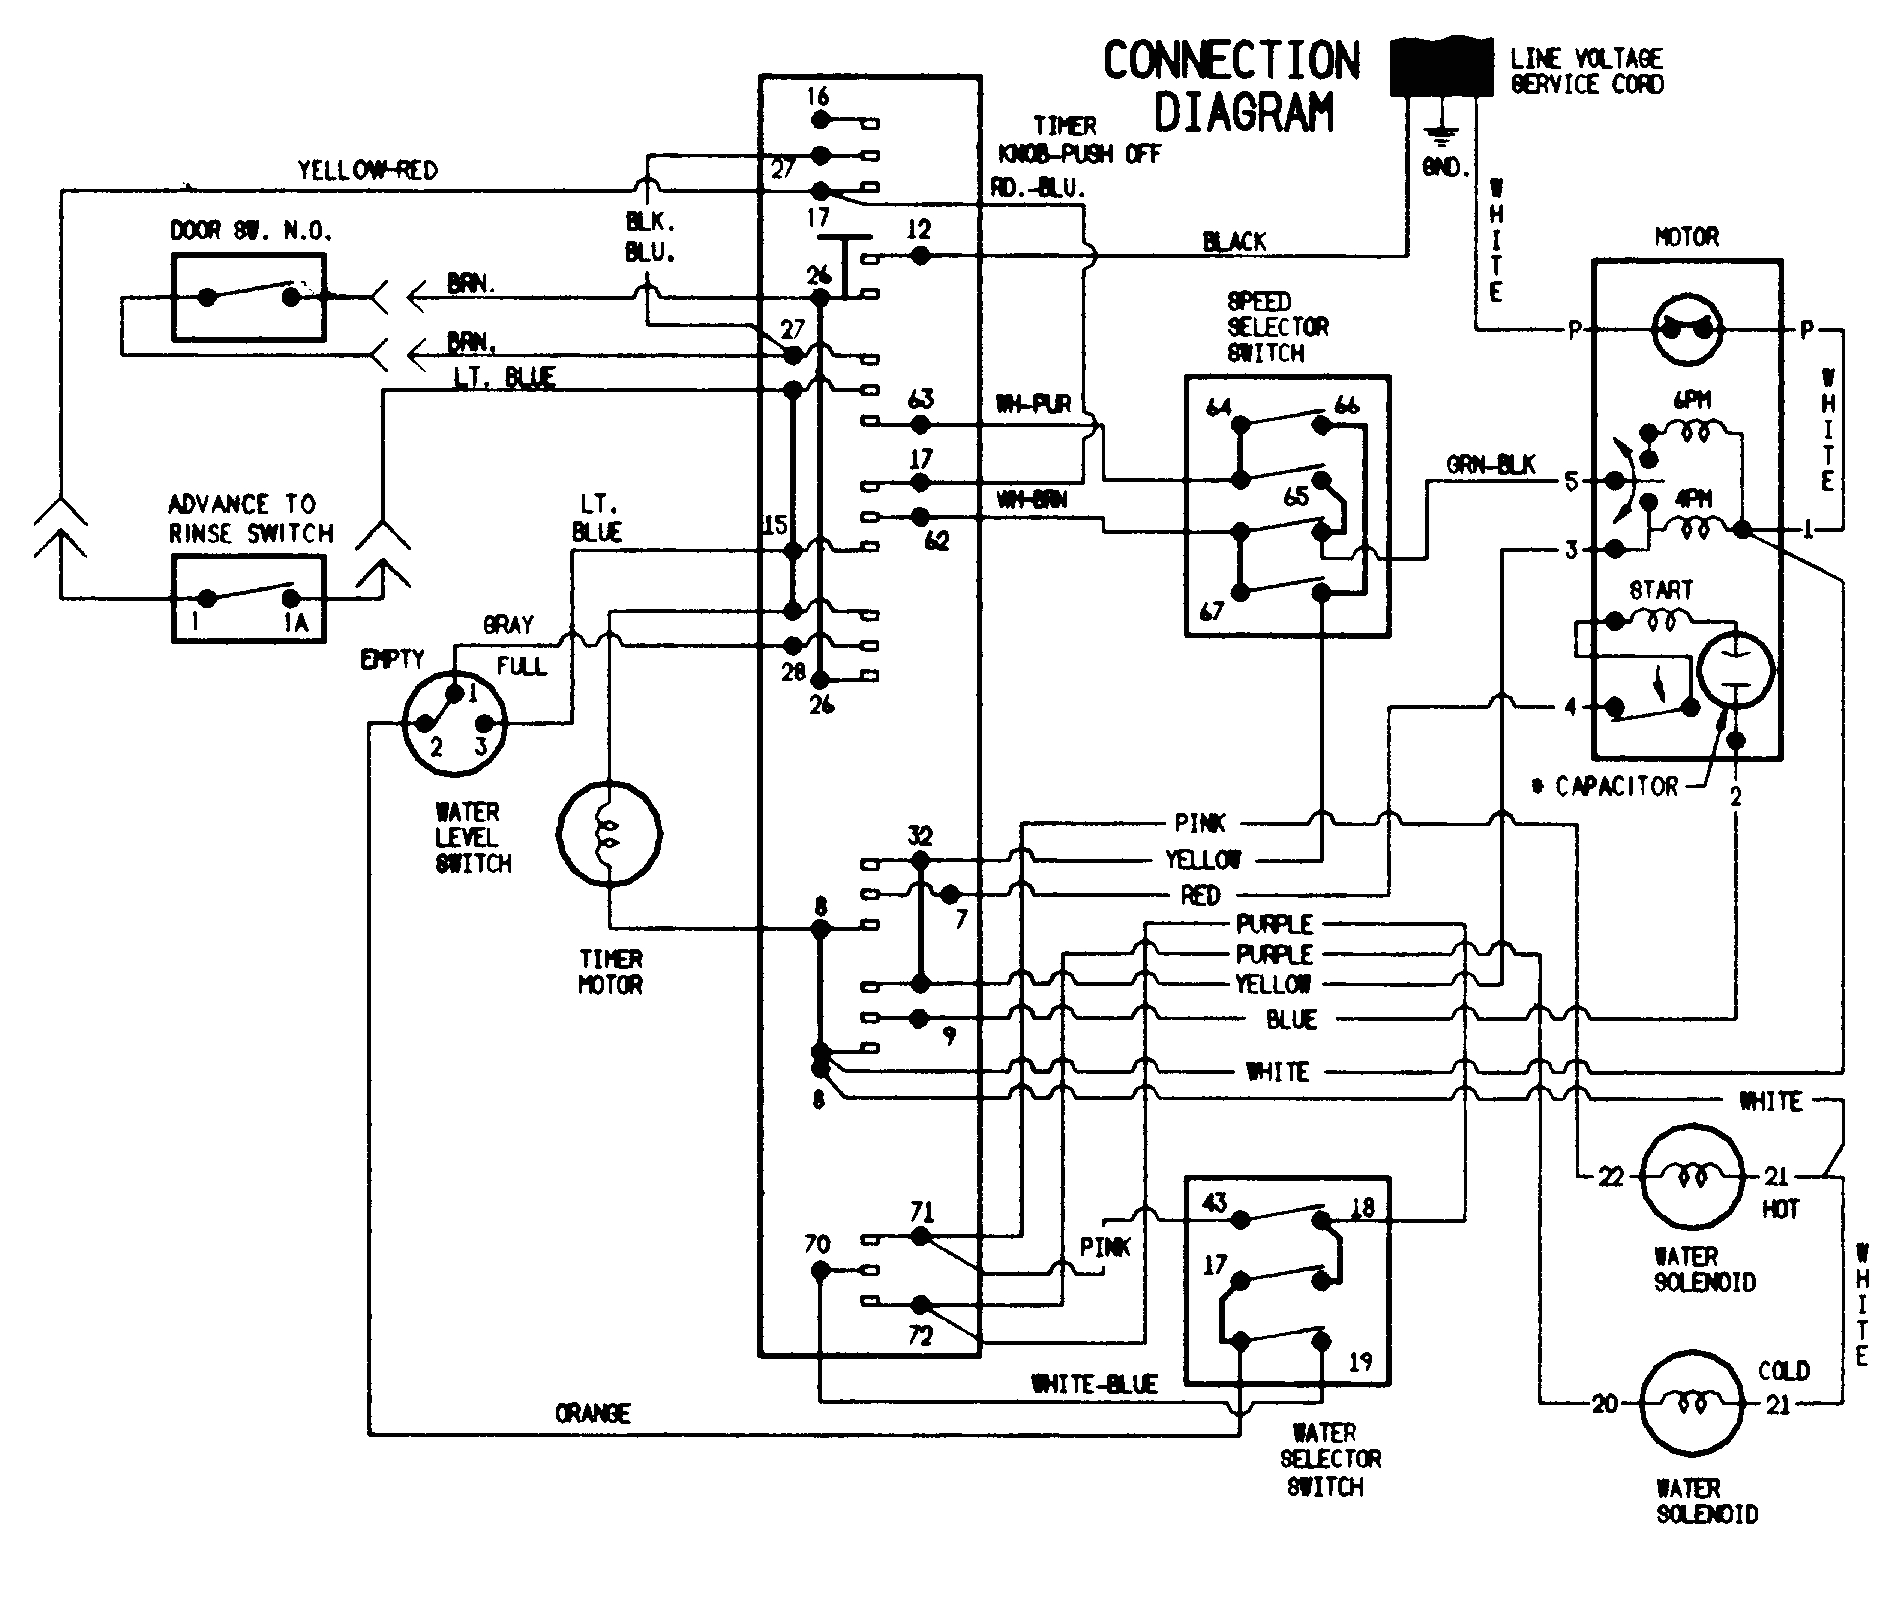 wiring diagram of washing machine timer free download wiring 6 17 pressure washer motor wiring diagram free download